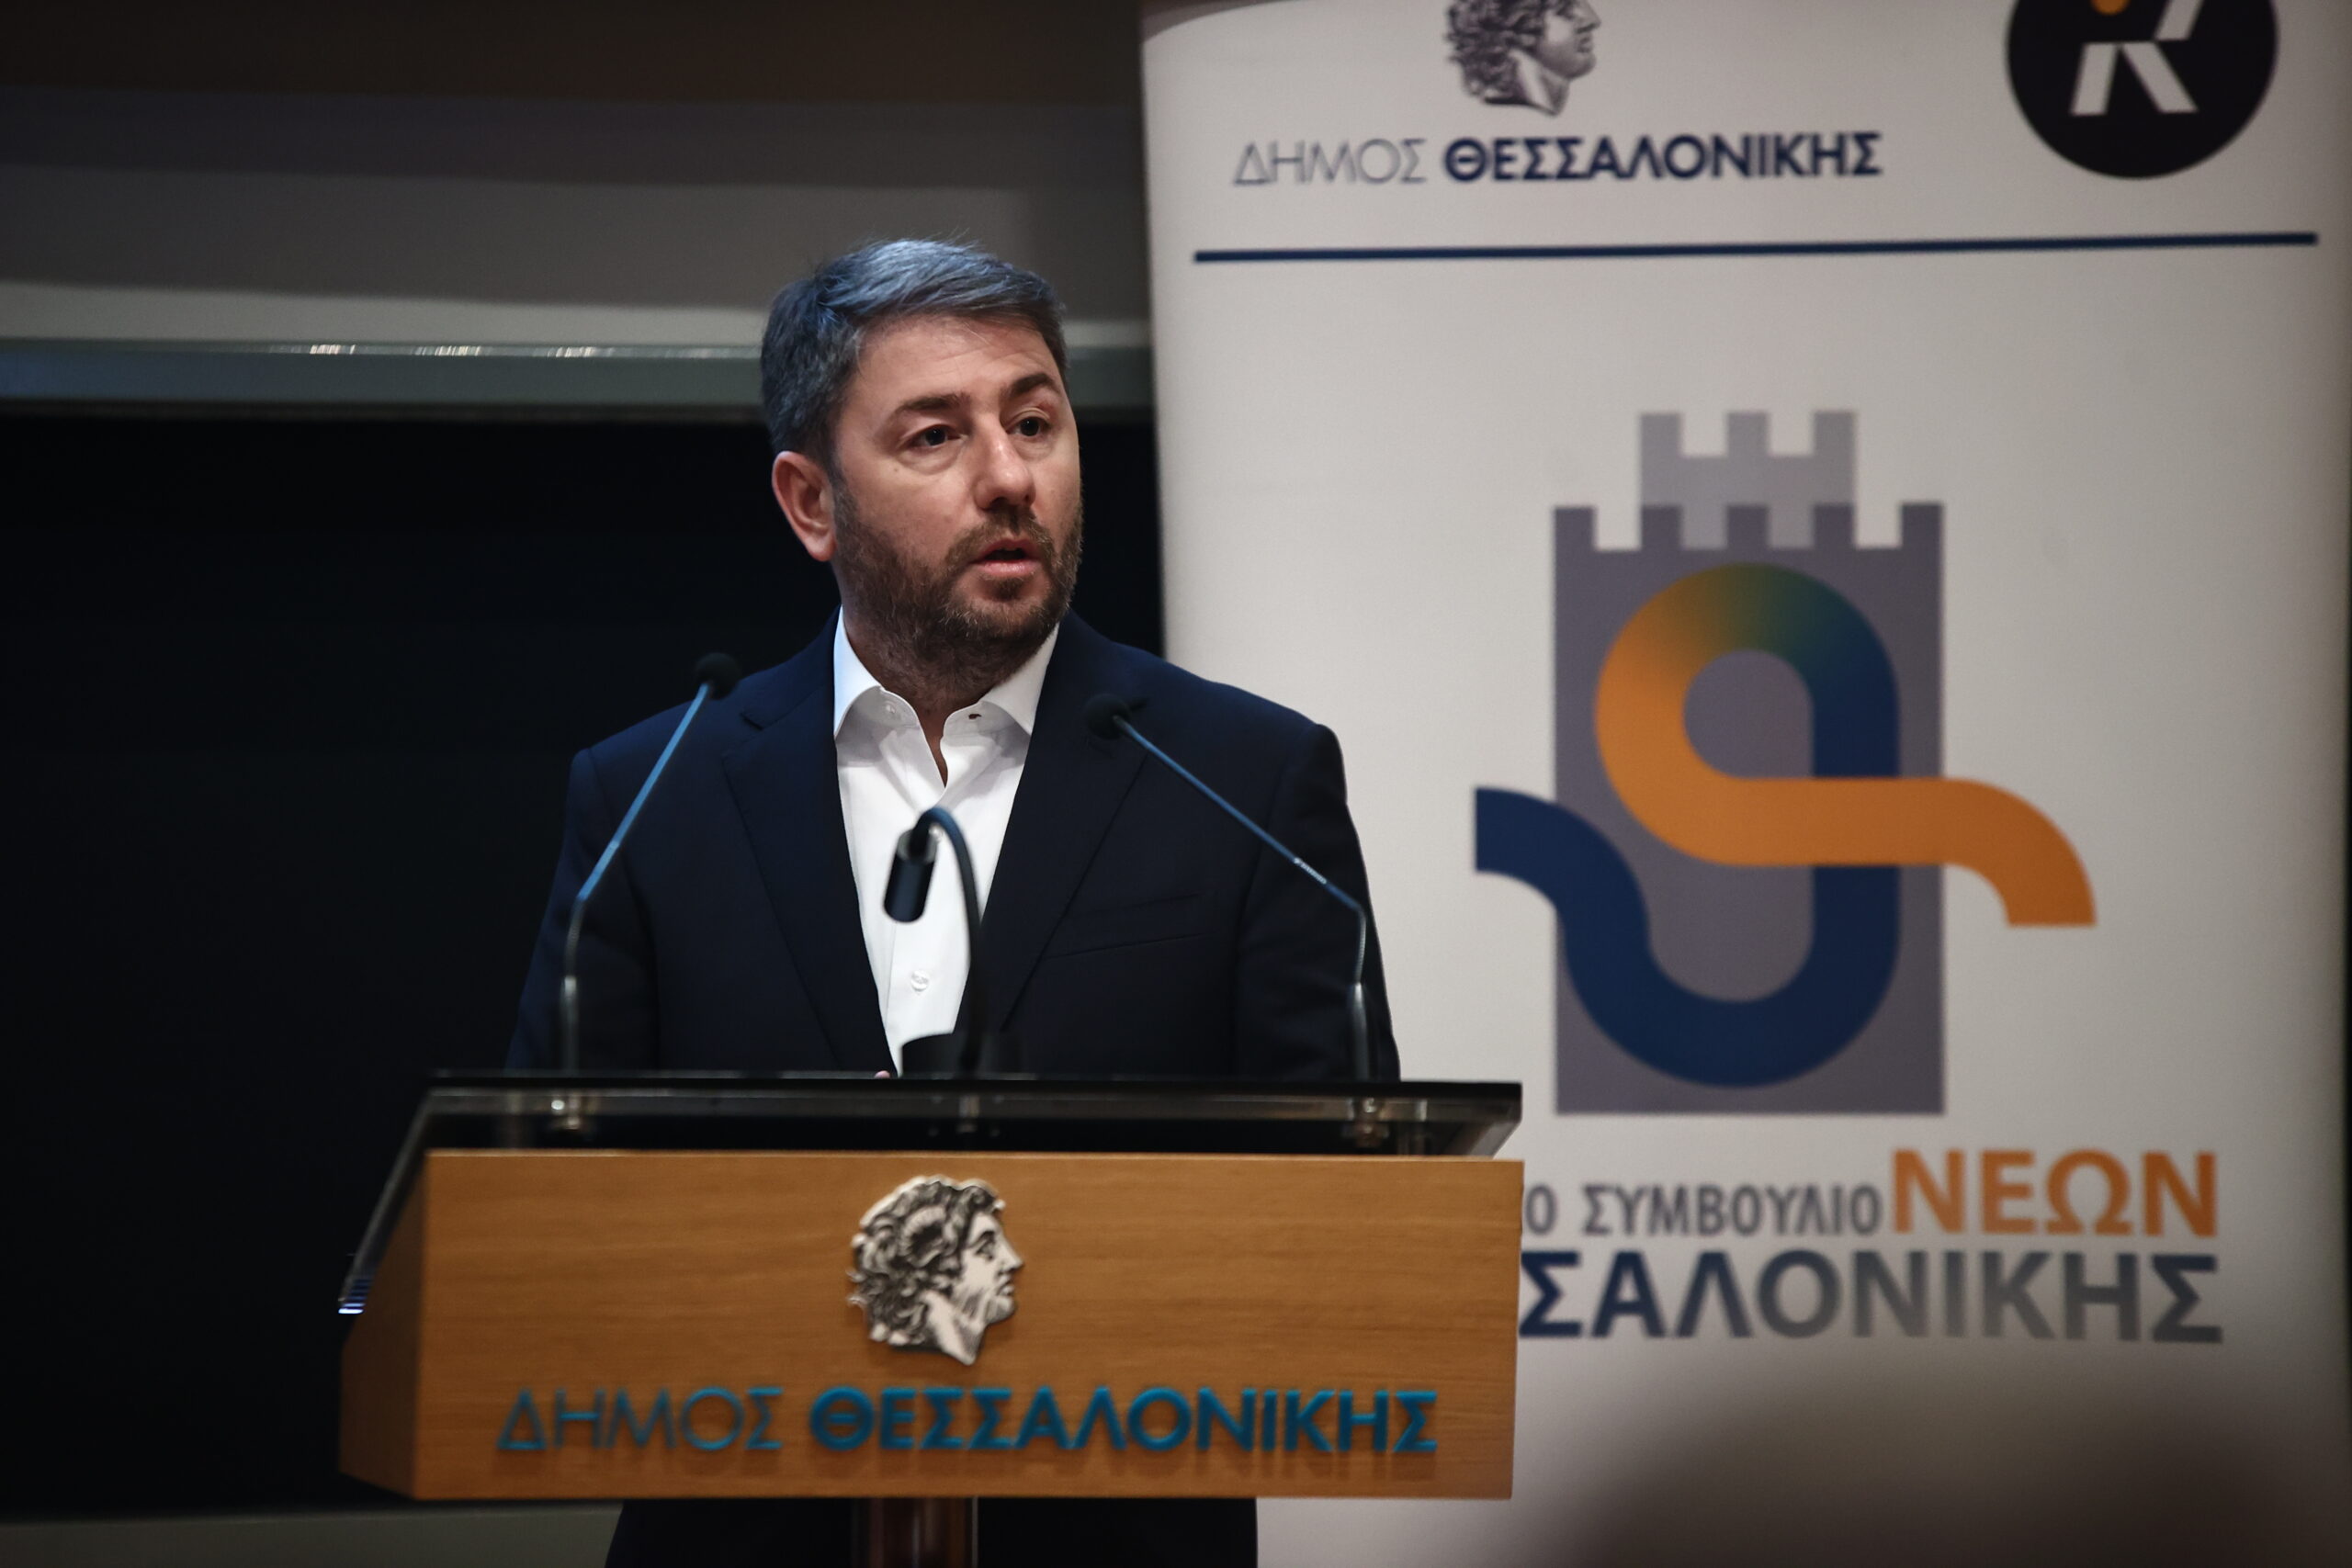 Στο Δημοτικό Συμβούλιο Νέων Θεσσαλονίκης ο Νίκος Ανδρουλάκης